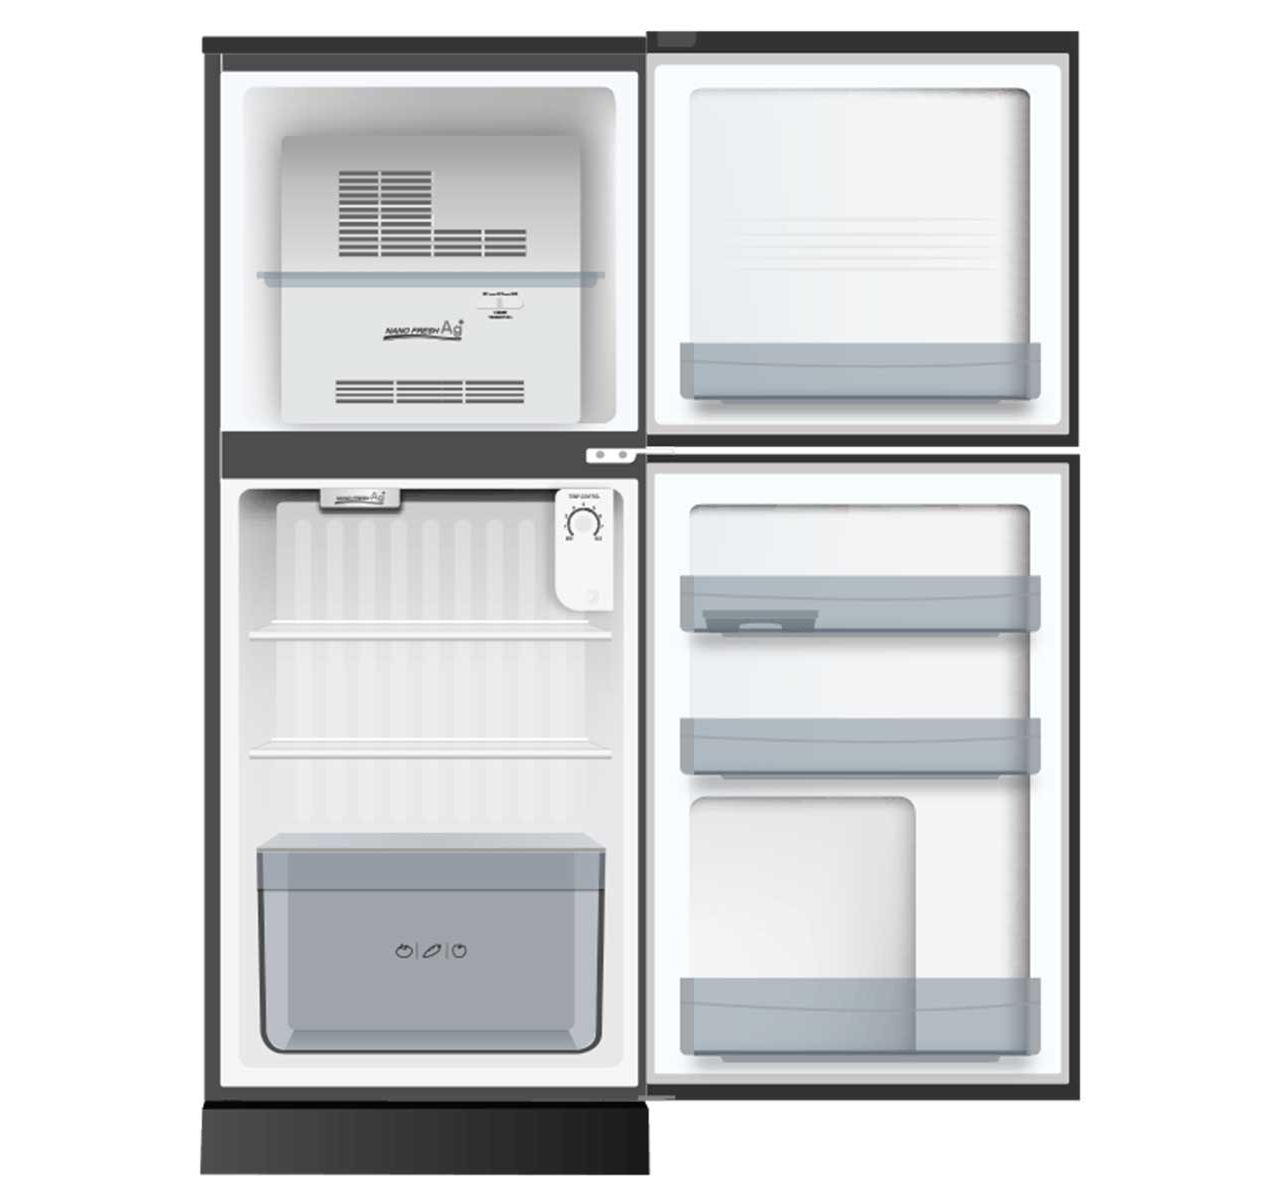 Trả Góp 0% - Tủ Lạnh Aqua 130 lít AQR-T150FA BS công nghệ làm lạnh đa chiều kháng khuẩn khử...